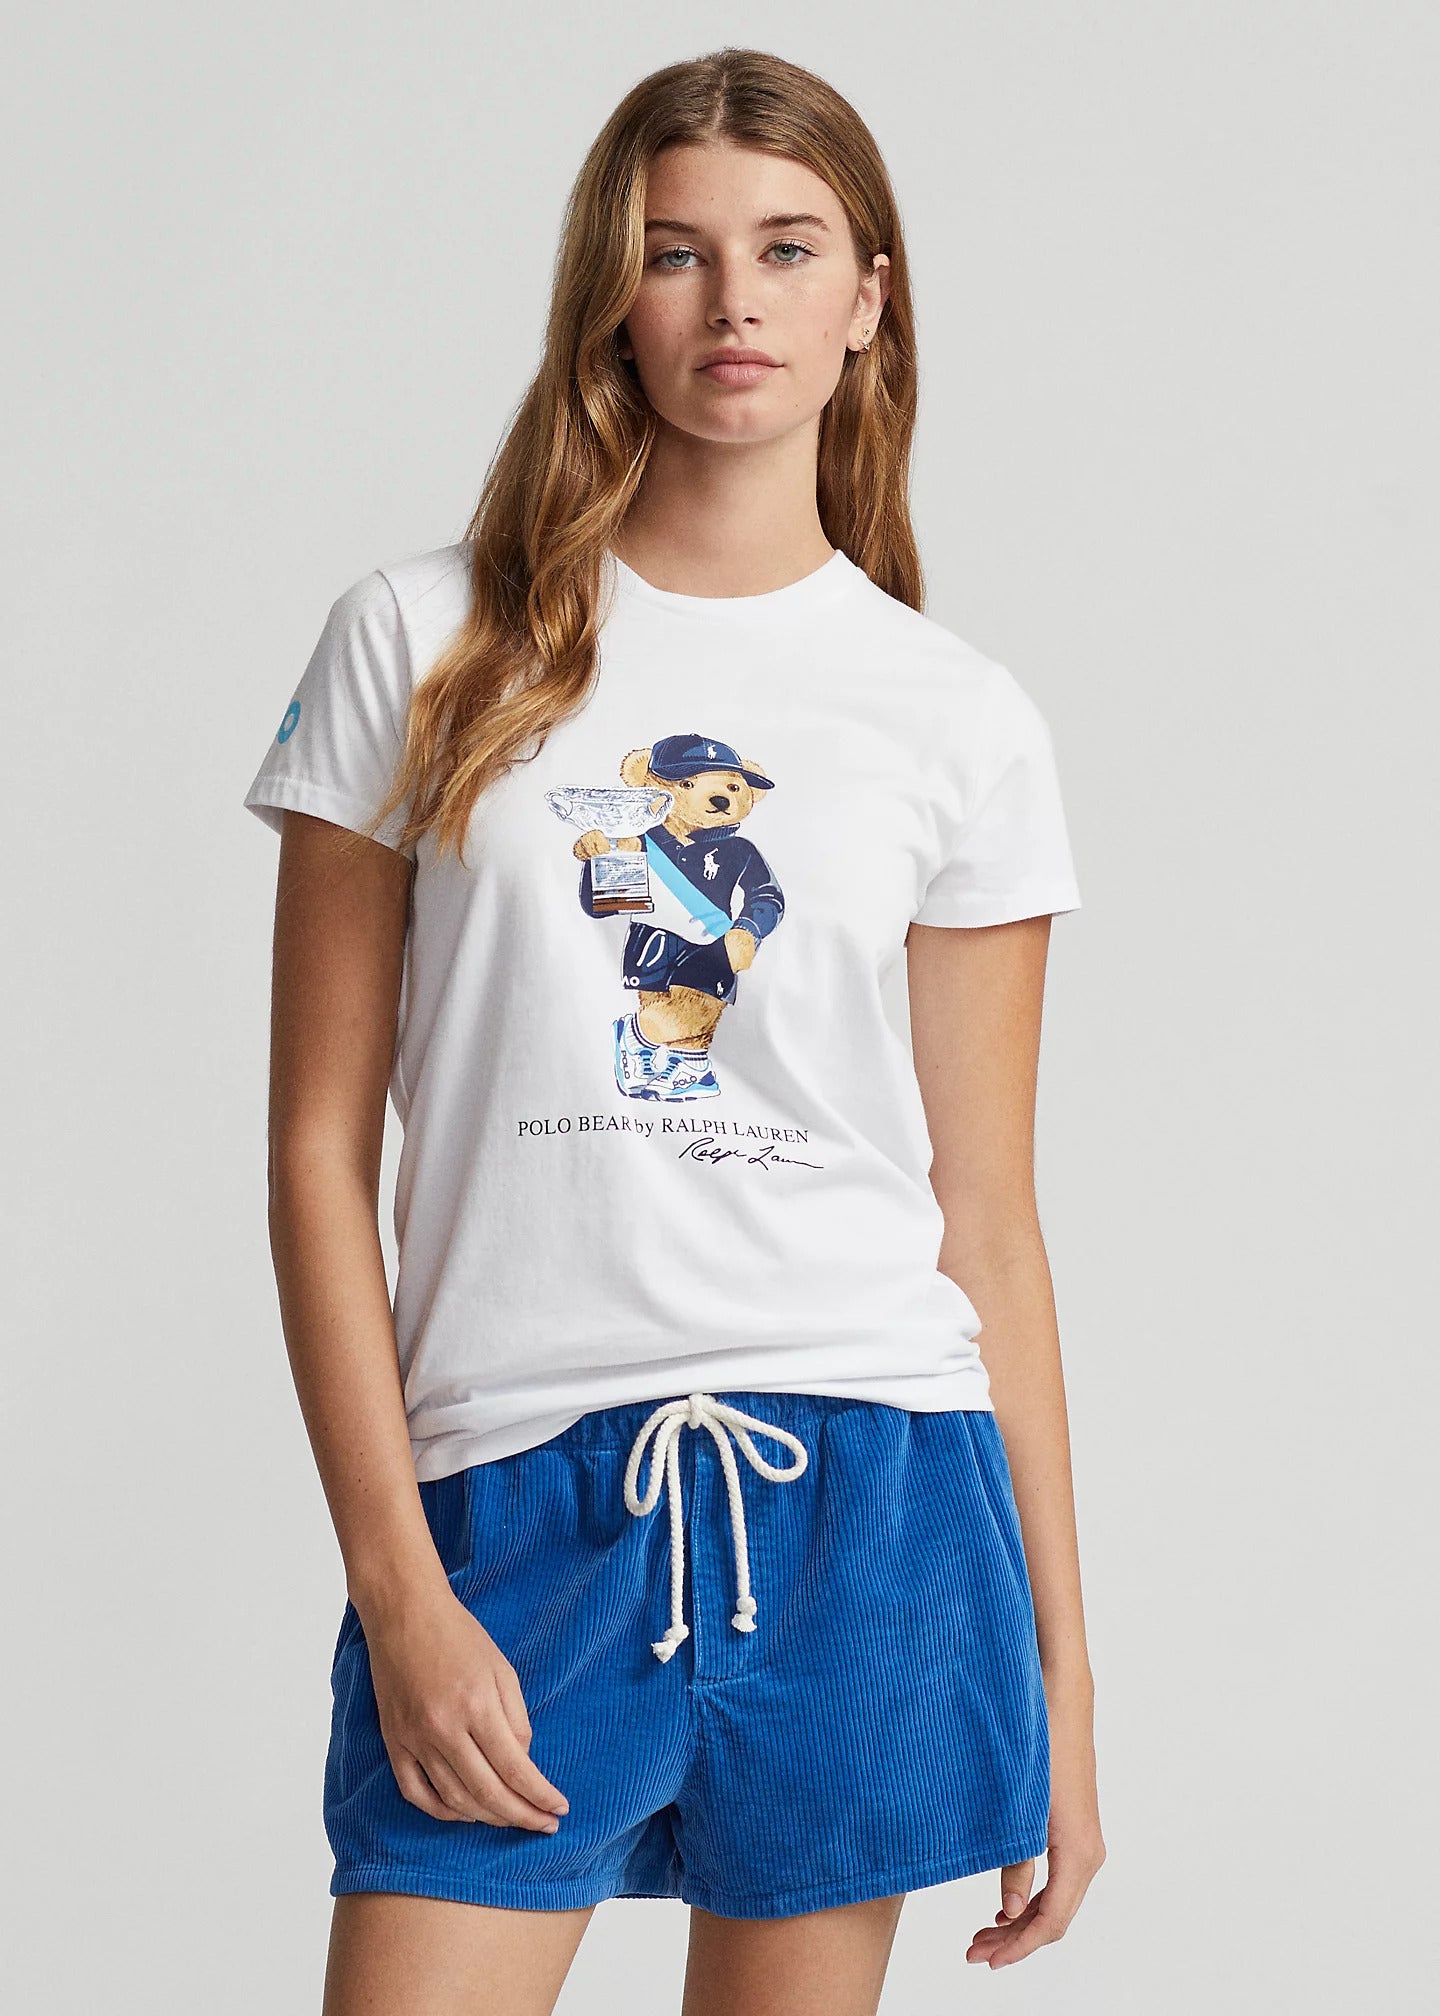 Women's T-Shirt Polo Bear